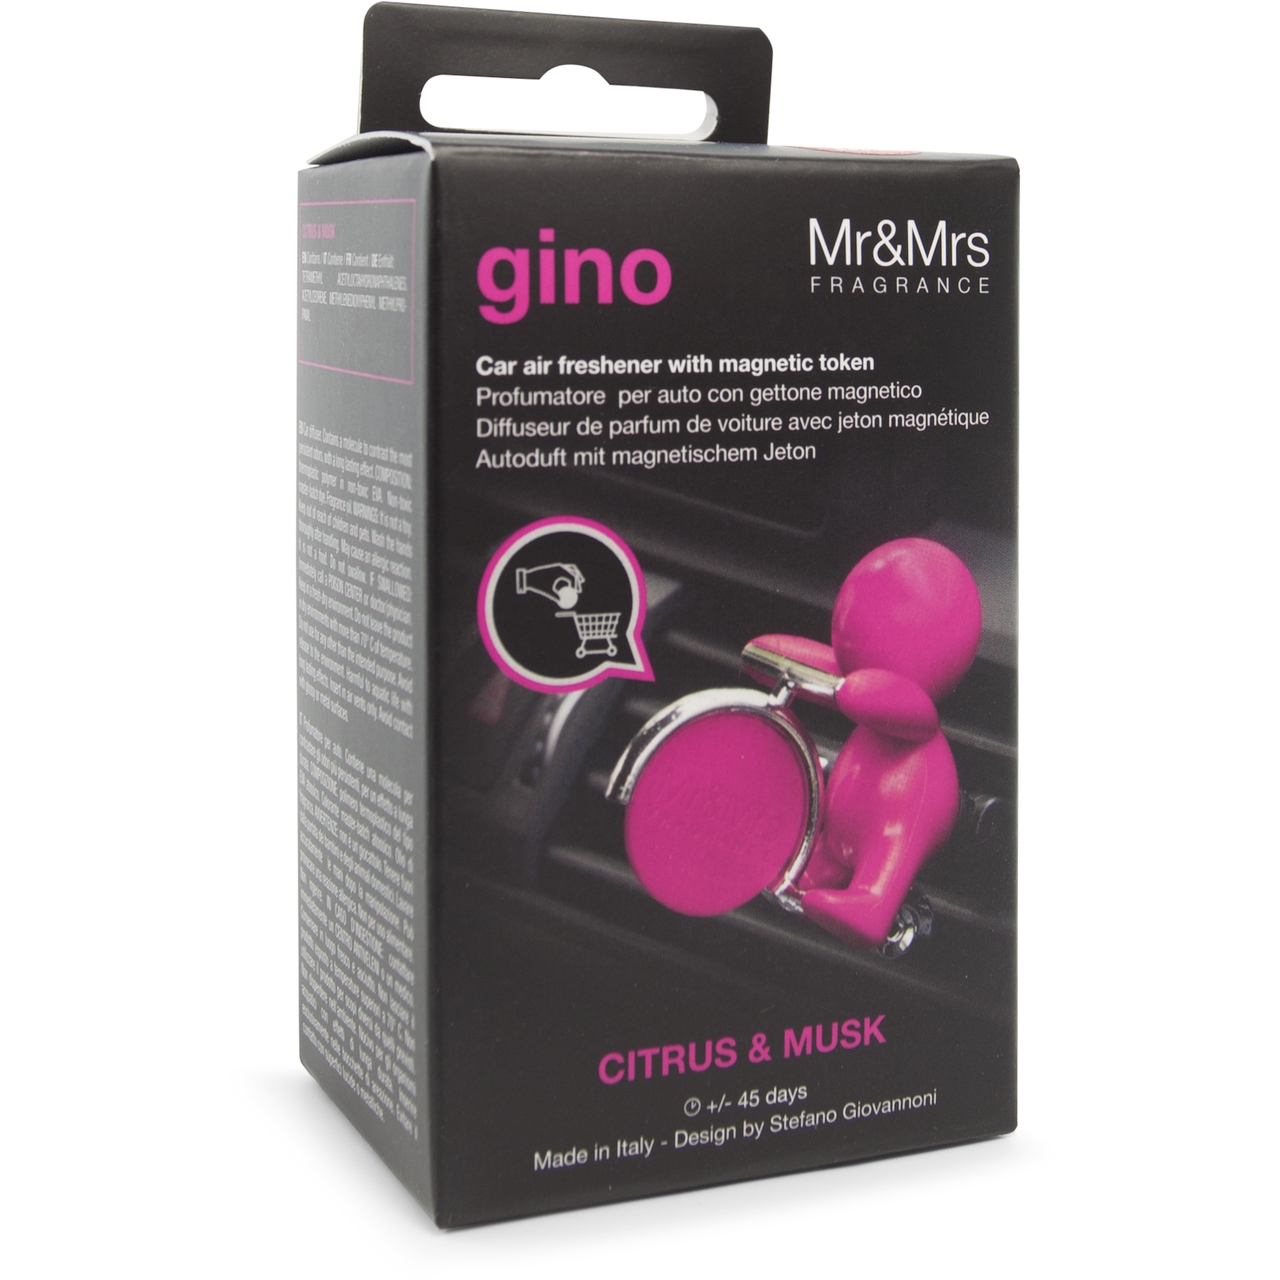    Gino Citrus&Musk,  (Mr&Mrs Fragrance N019688)